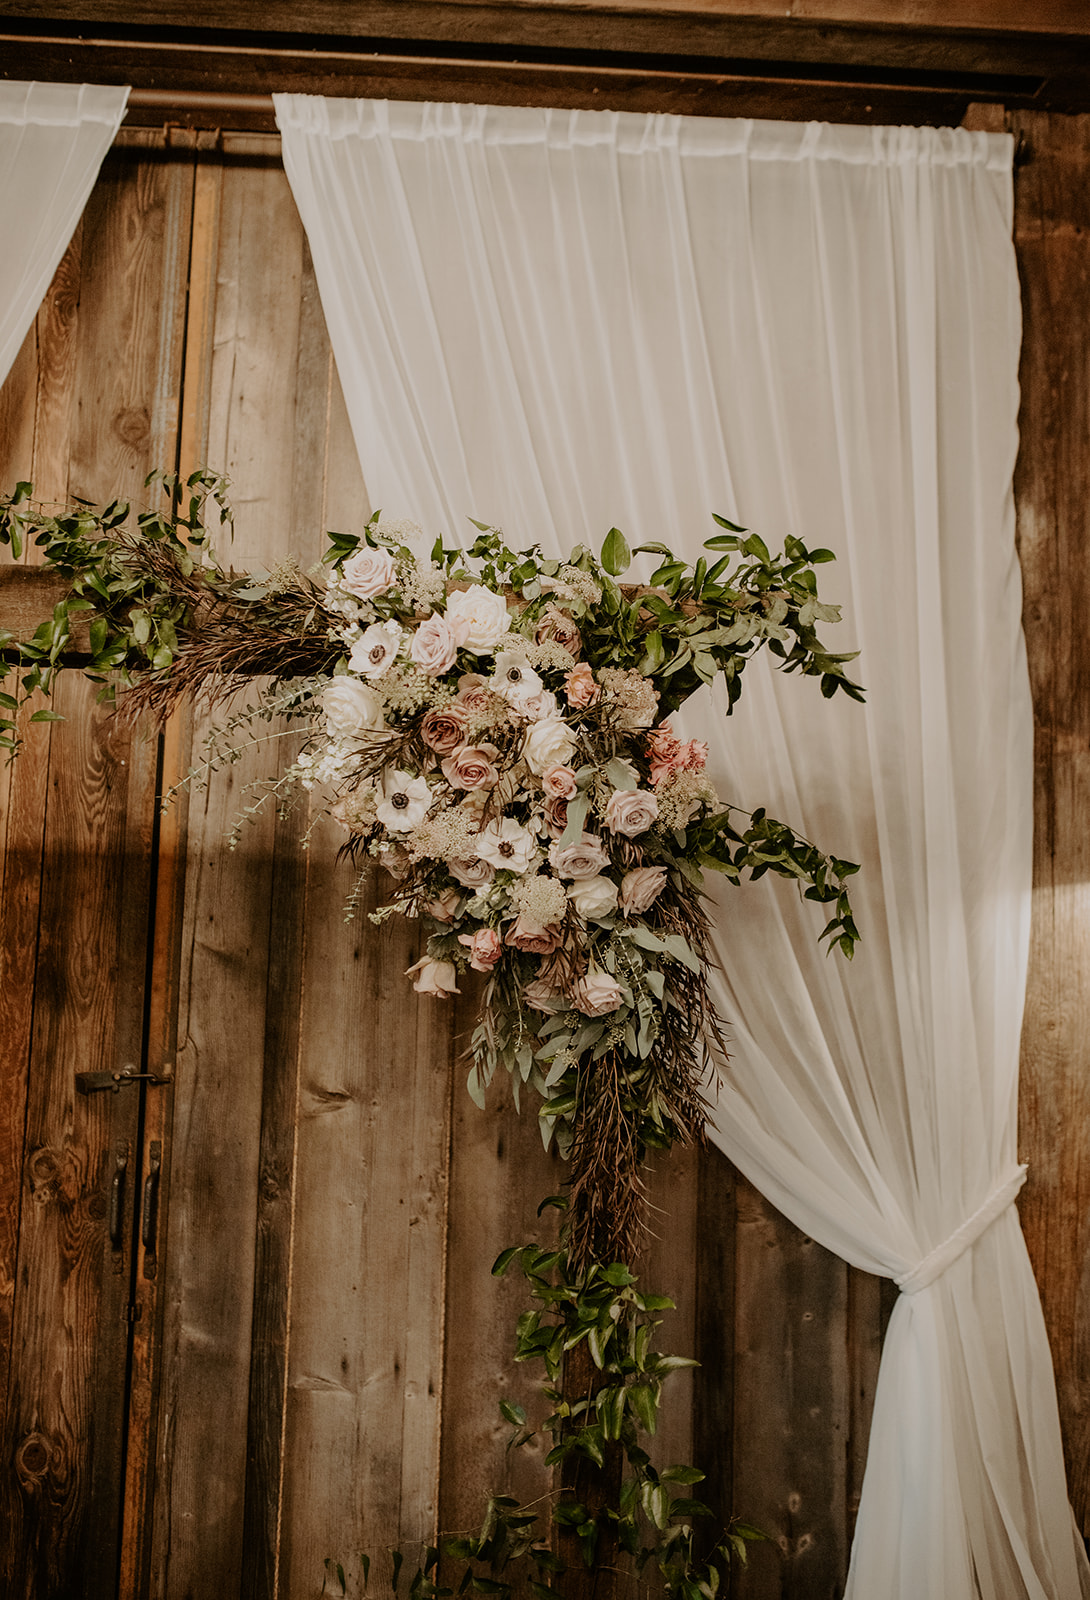 Kelley Farm wedding floral arch details